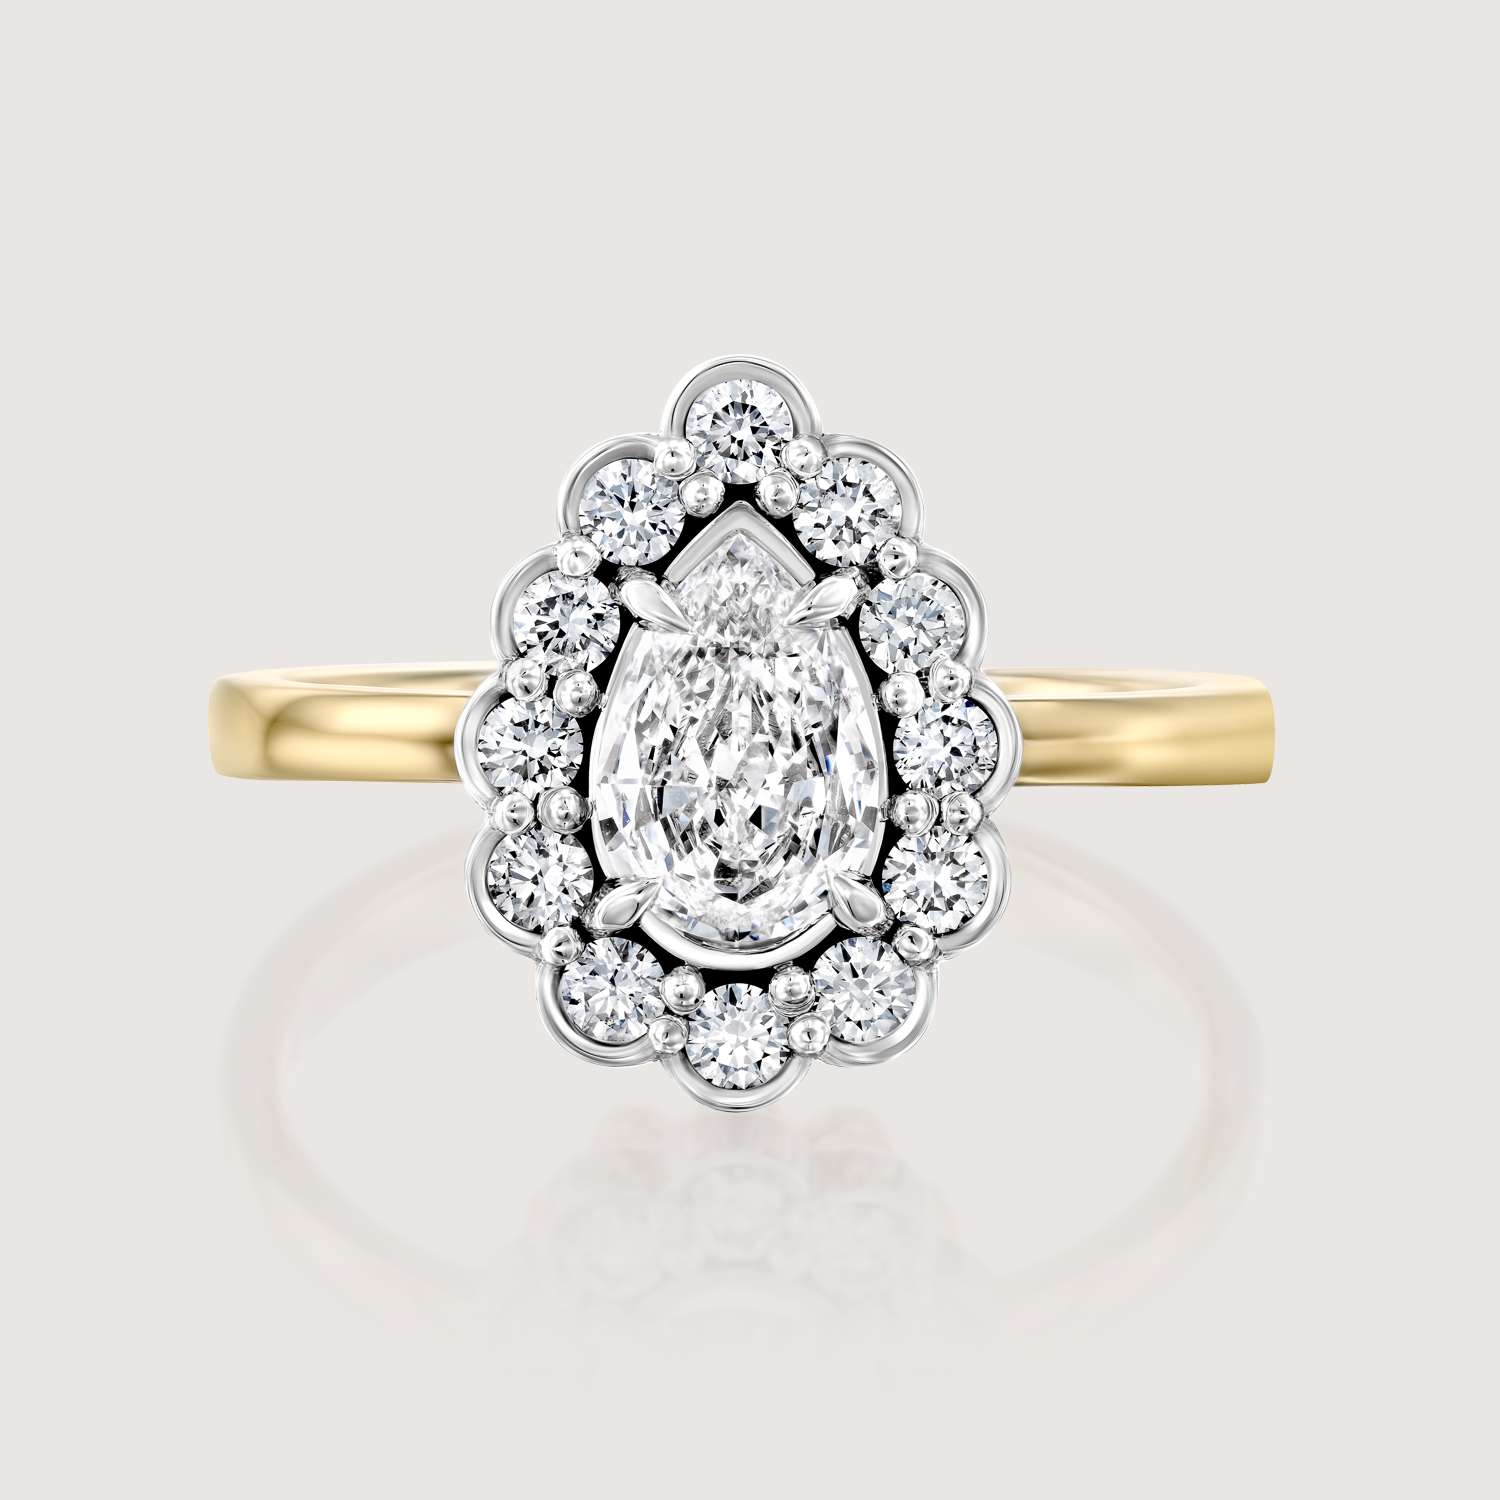 Marie Antoinette Gold Ring White Diamonds